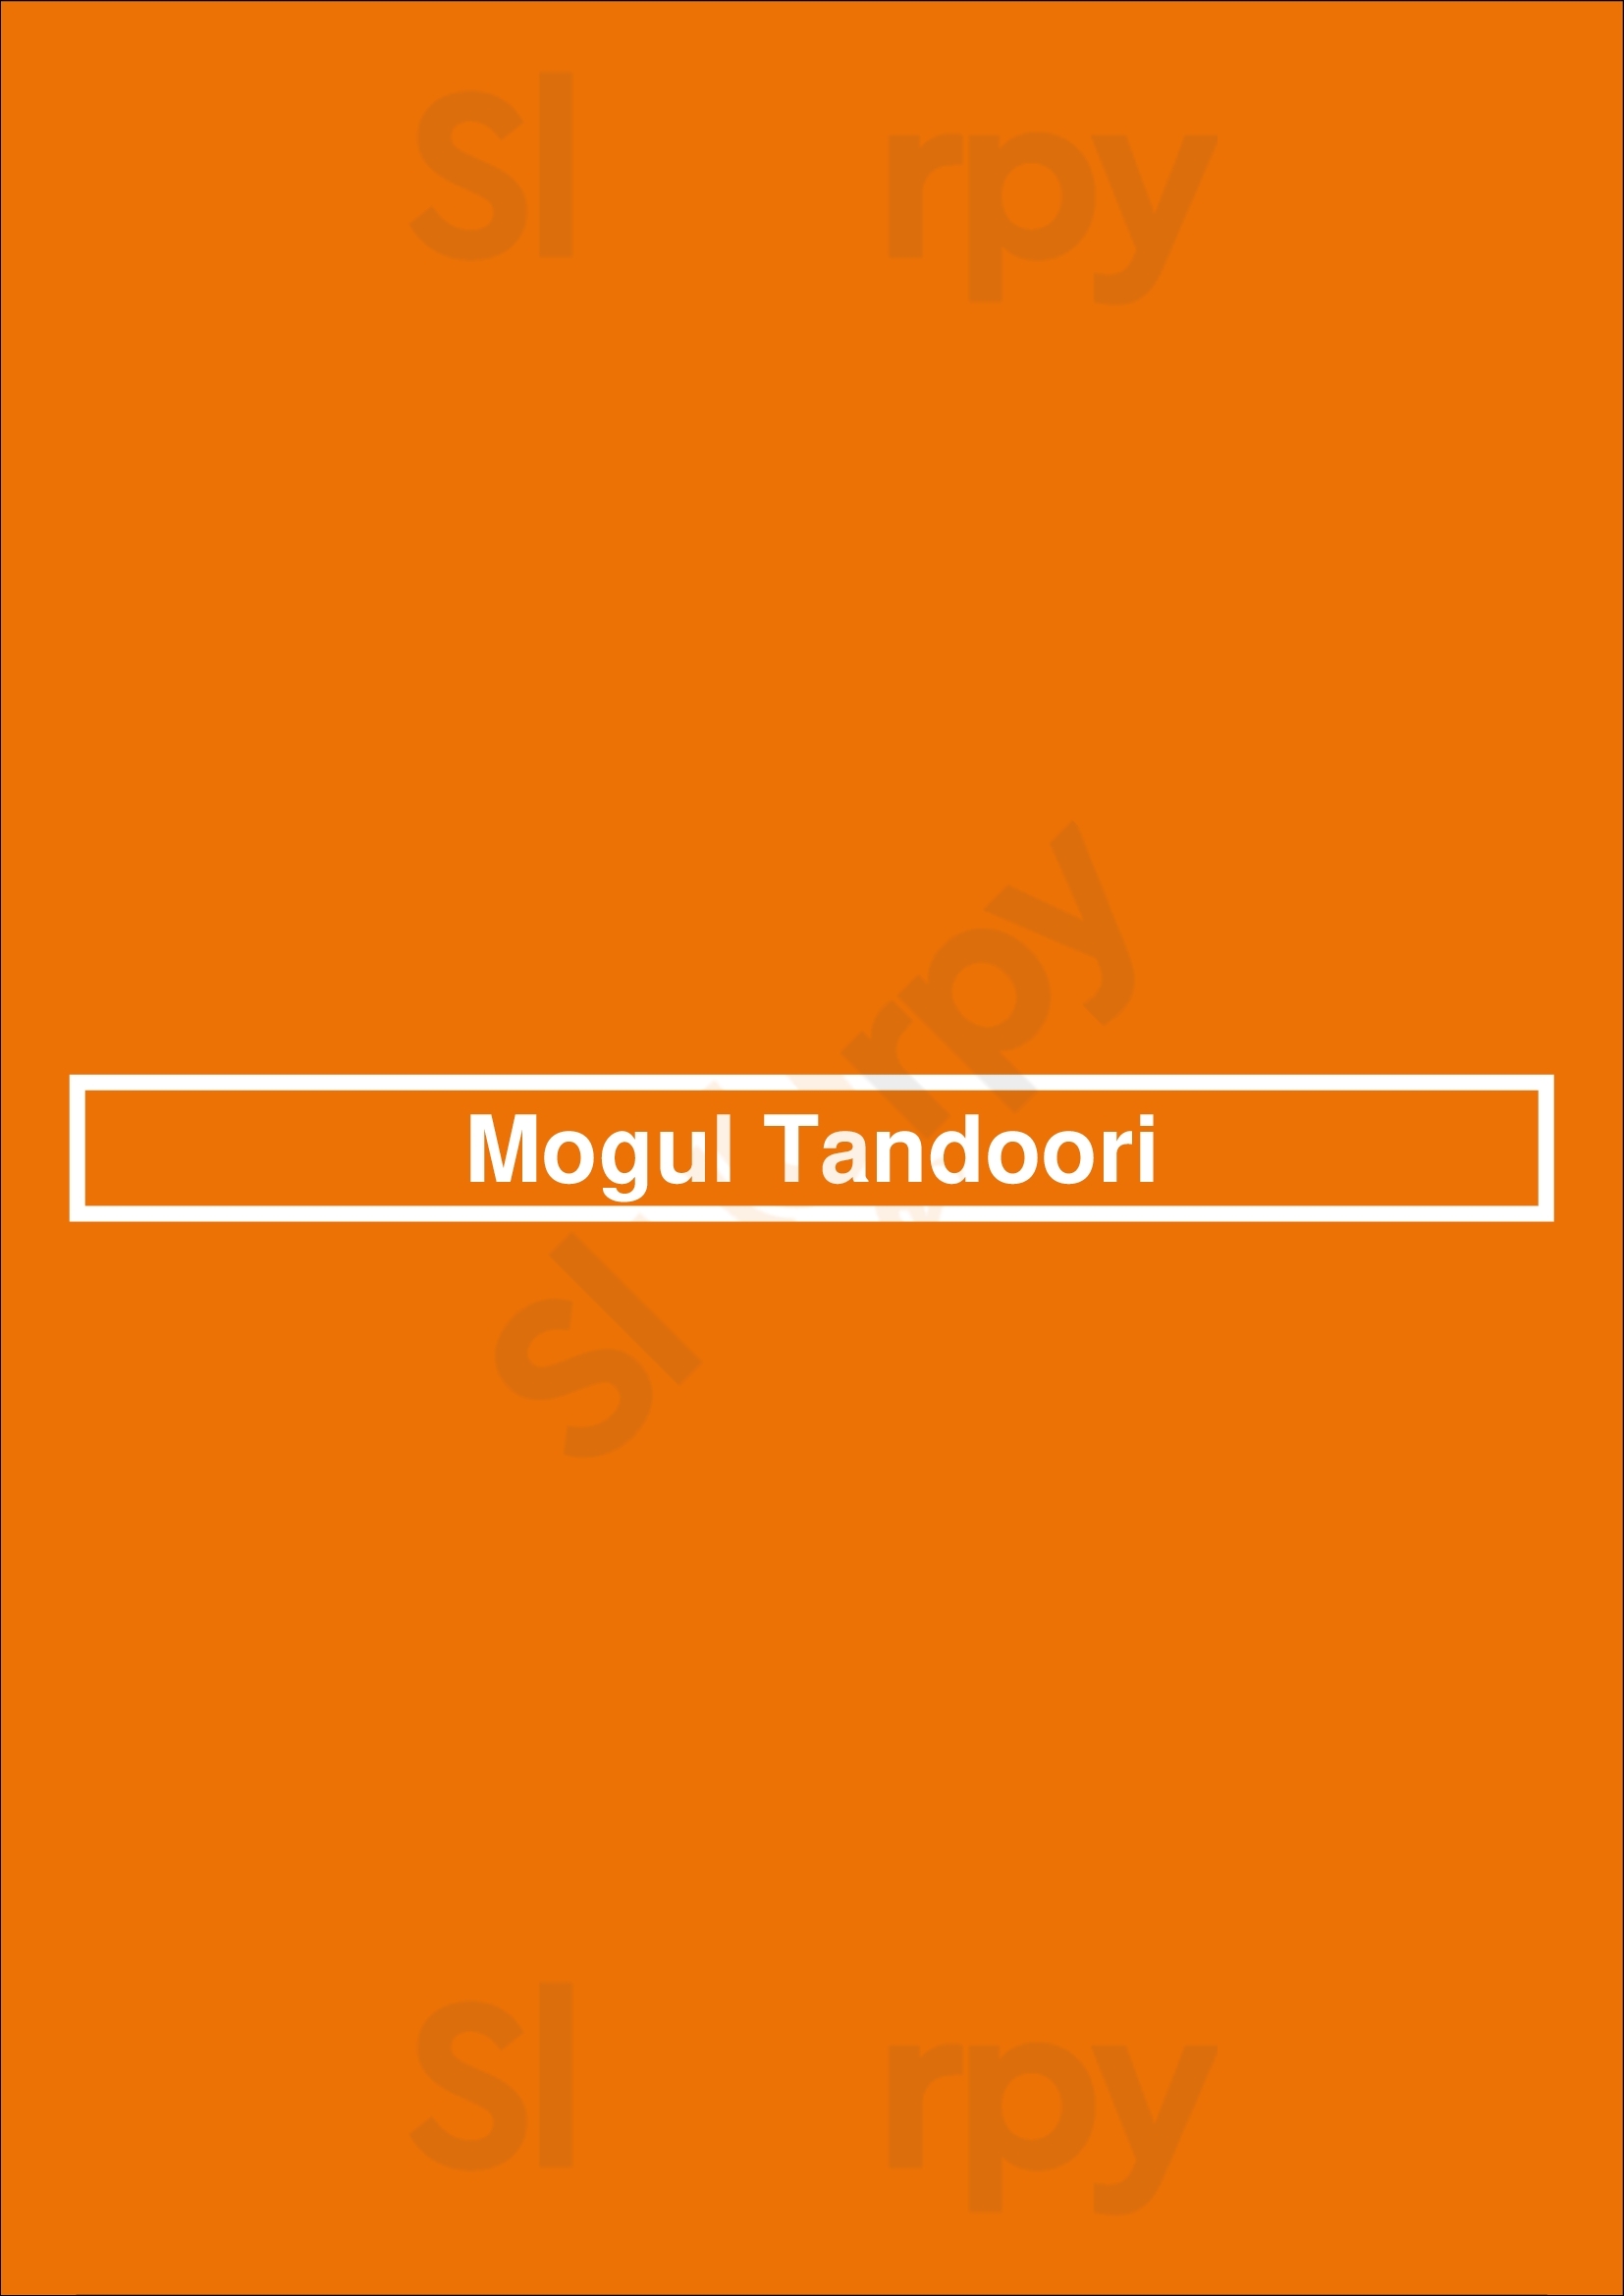 Mogul Tandoori London Menu - 1